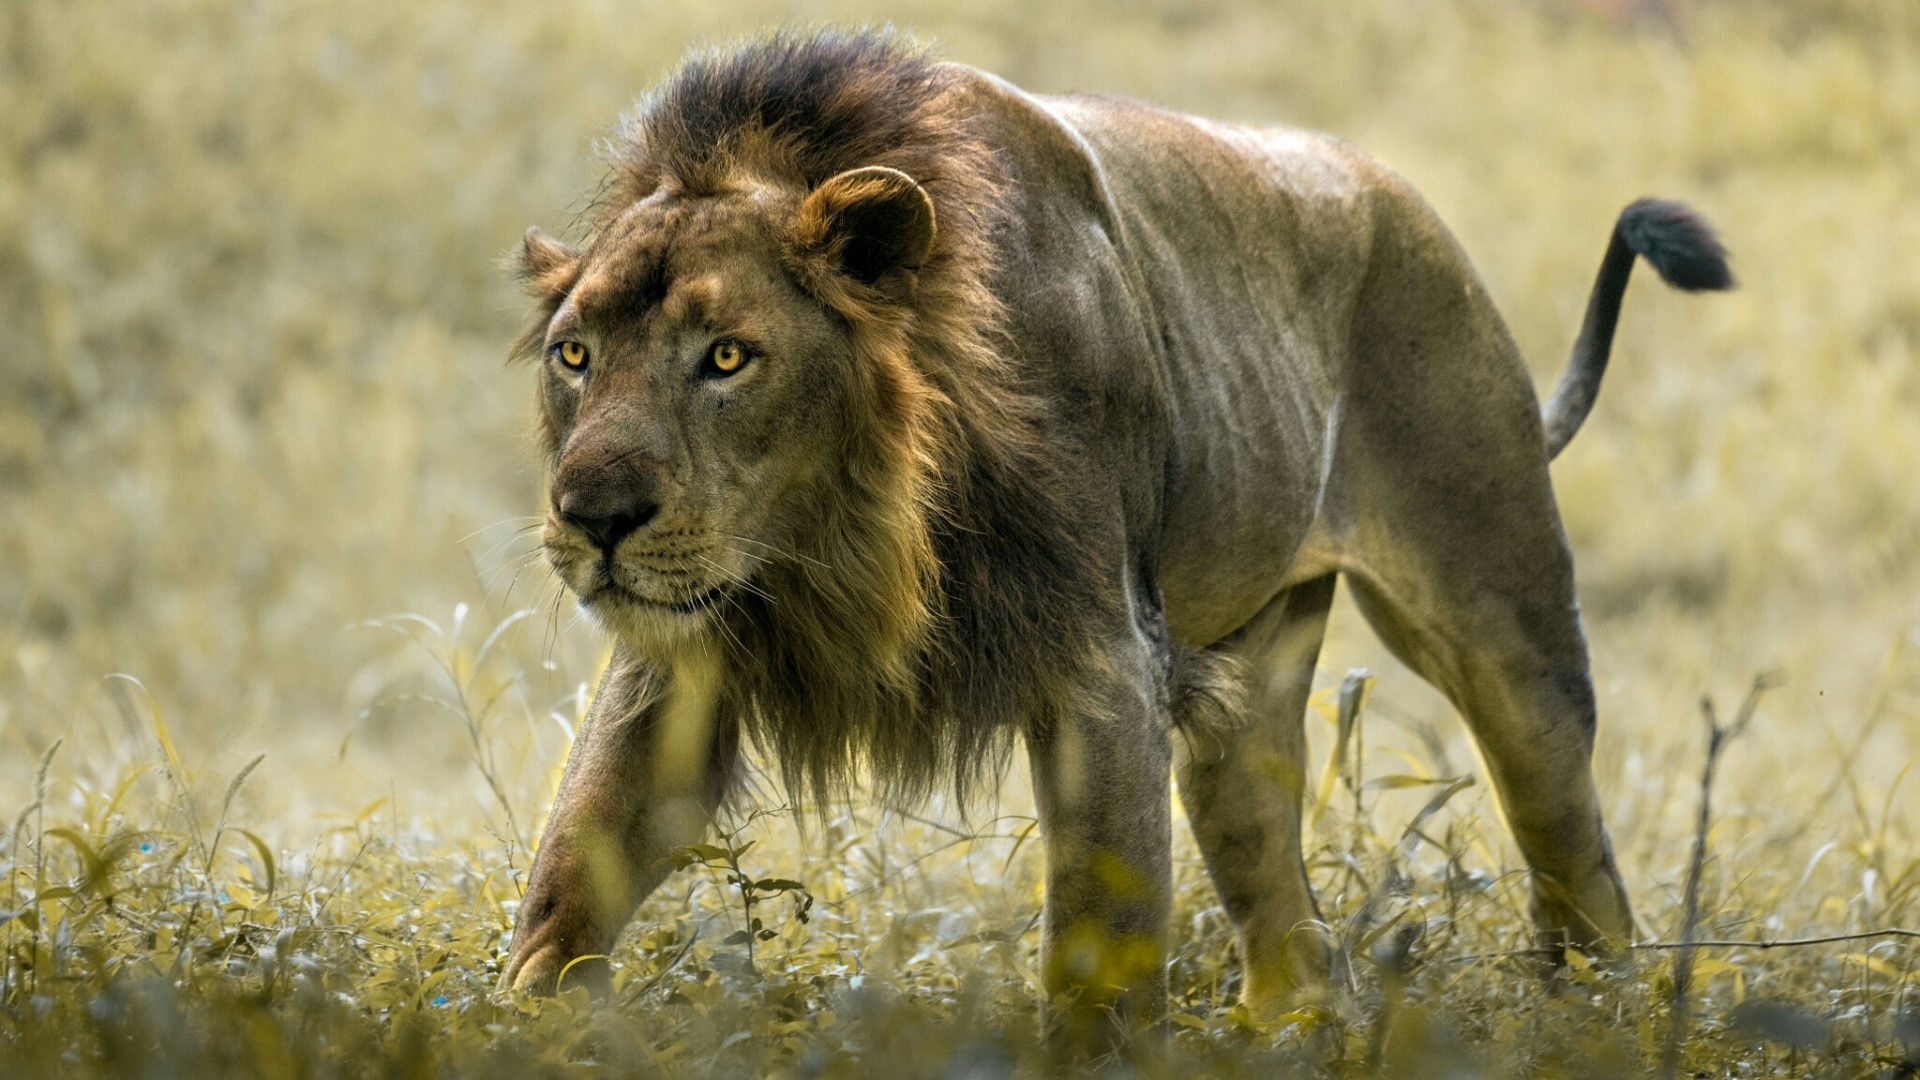 leone del kalahari avanza nell'erba della savana